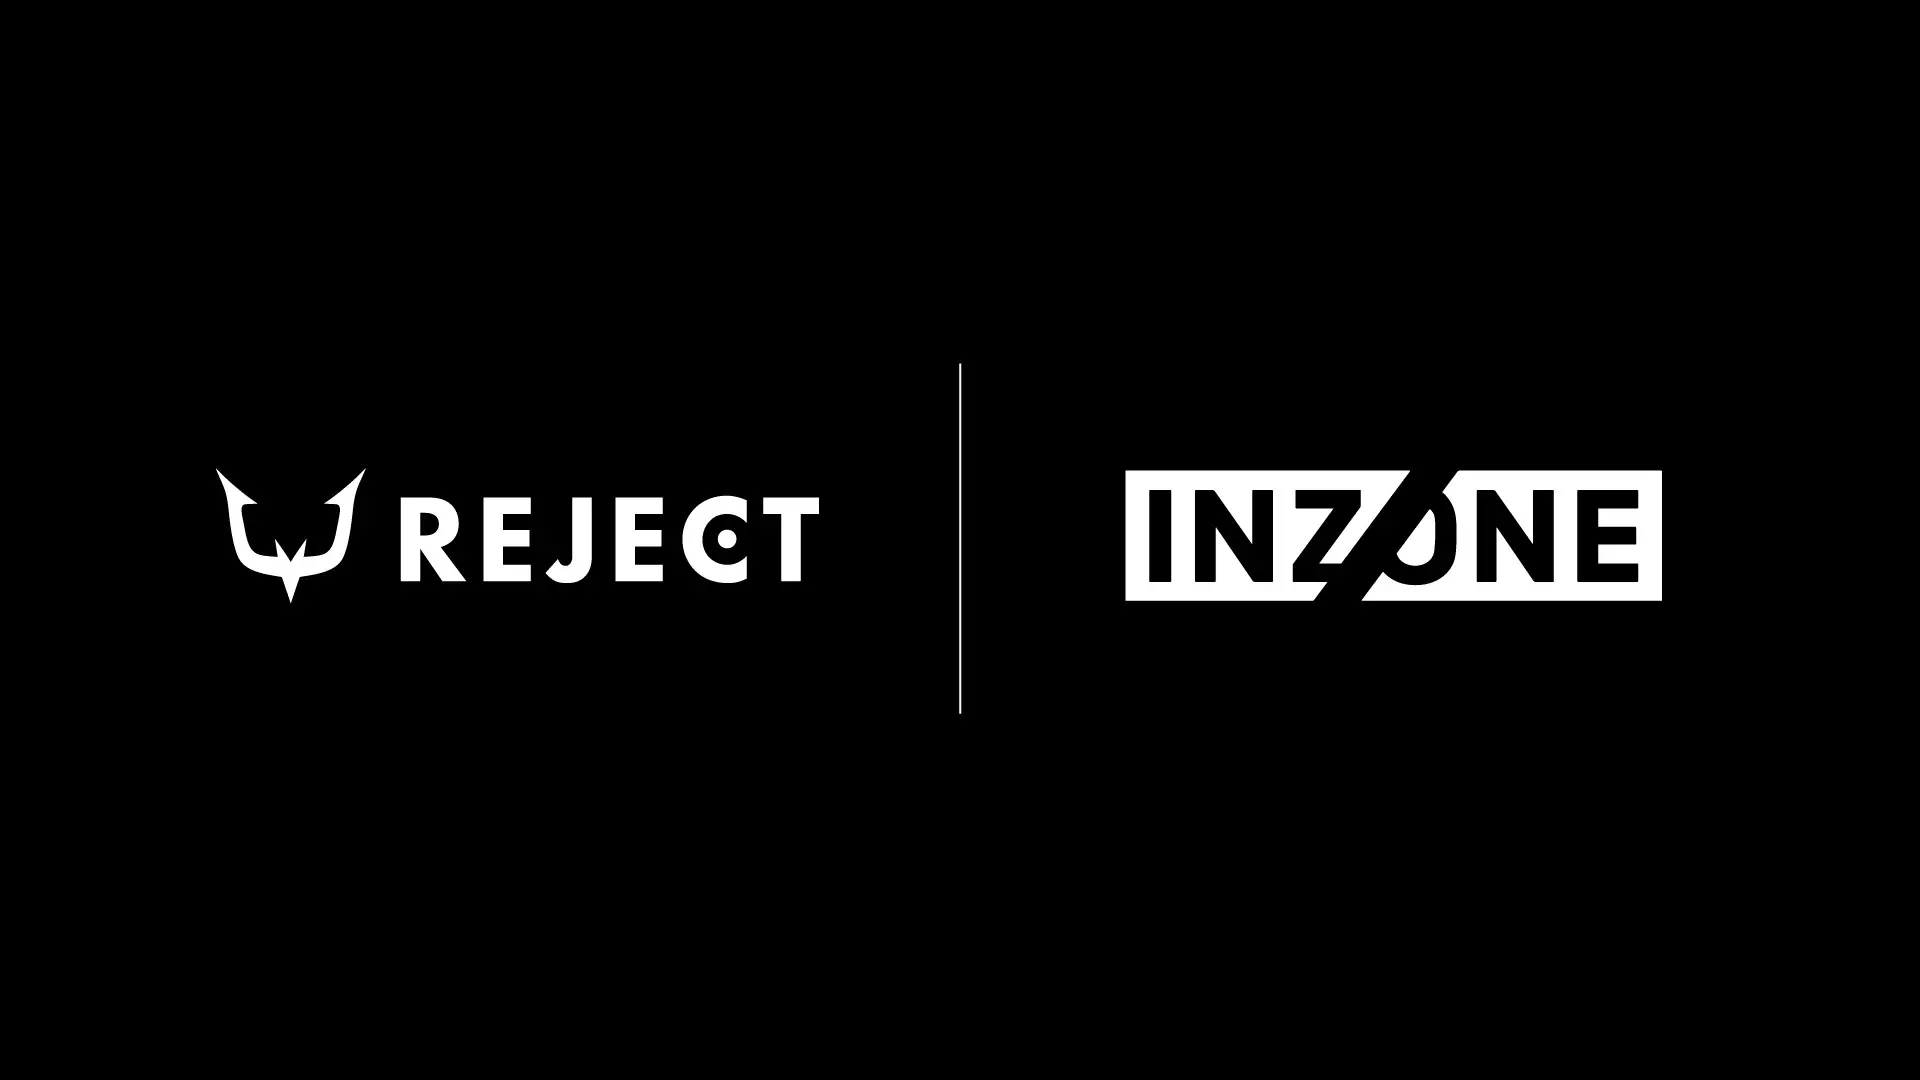 ソニーのゲーミングギア「INZONE™」のヘッドセットシリーズにおけるスポンサーシップ契約を締結